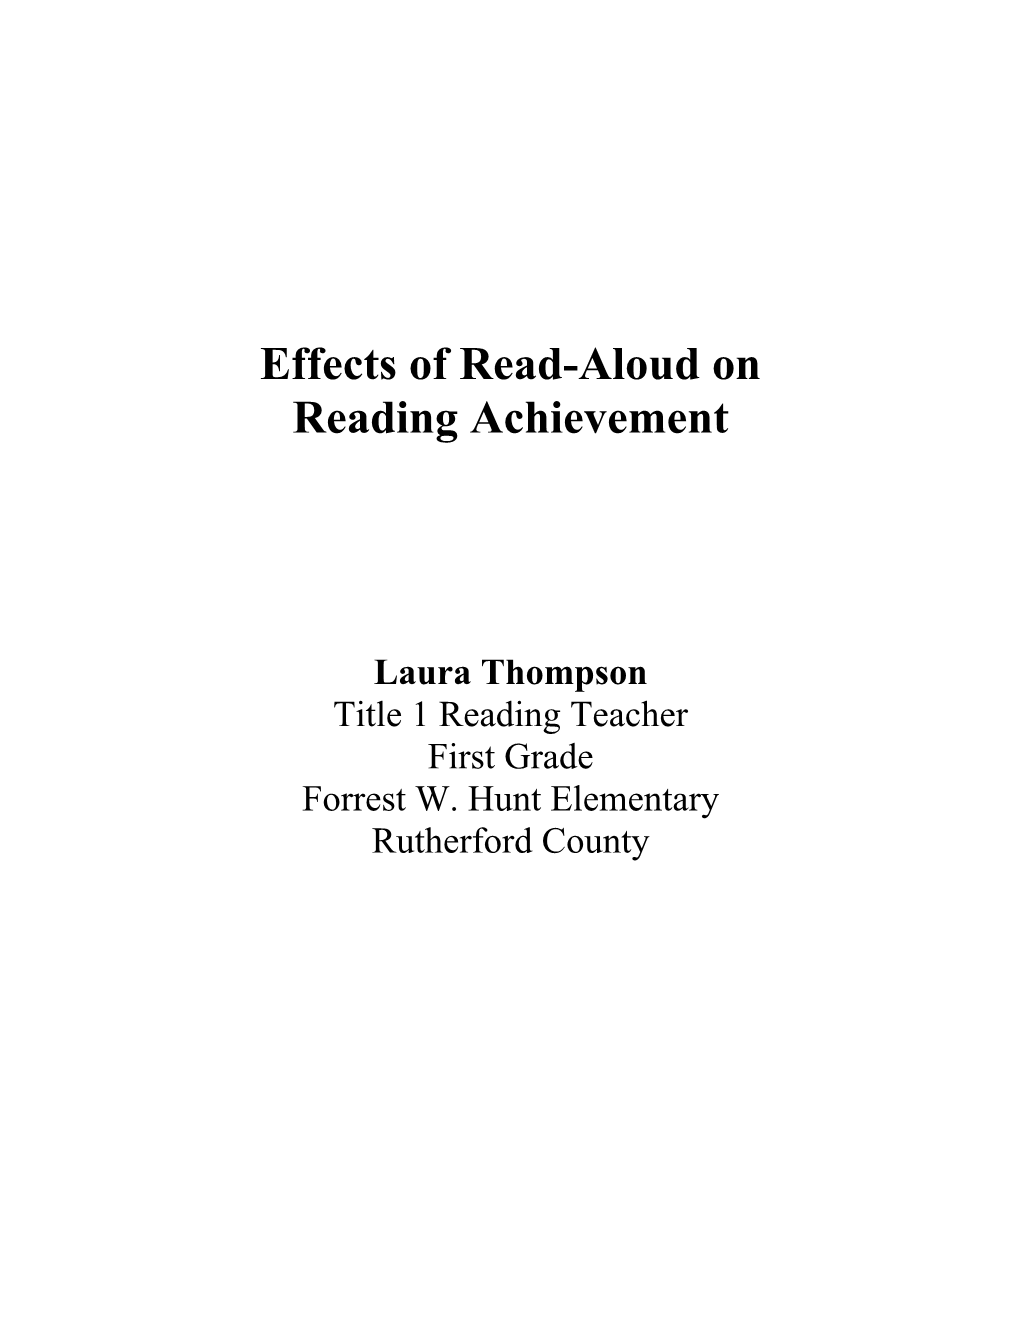 Effects of Read-Aloud On